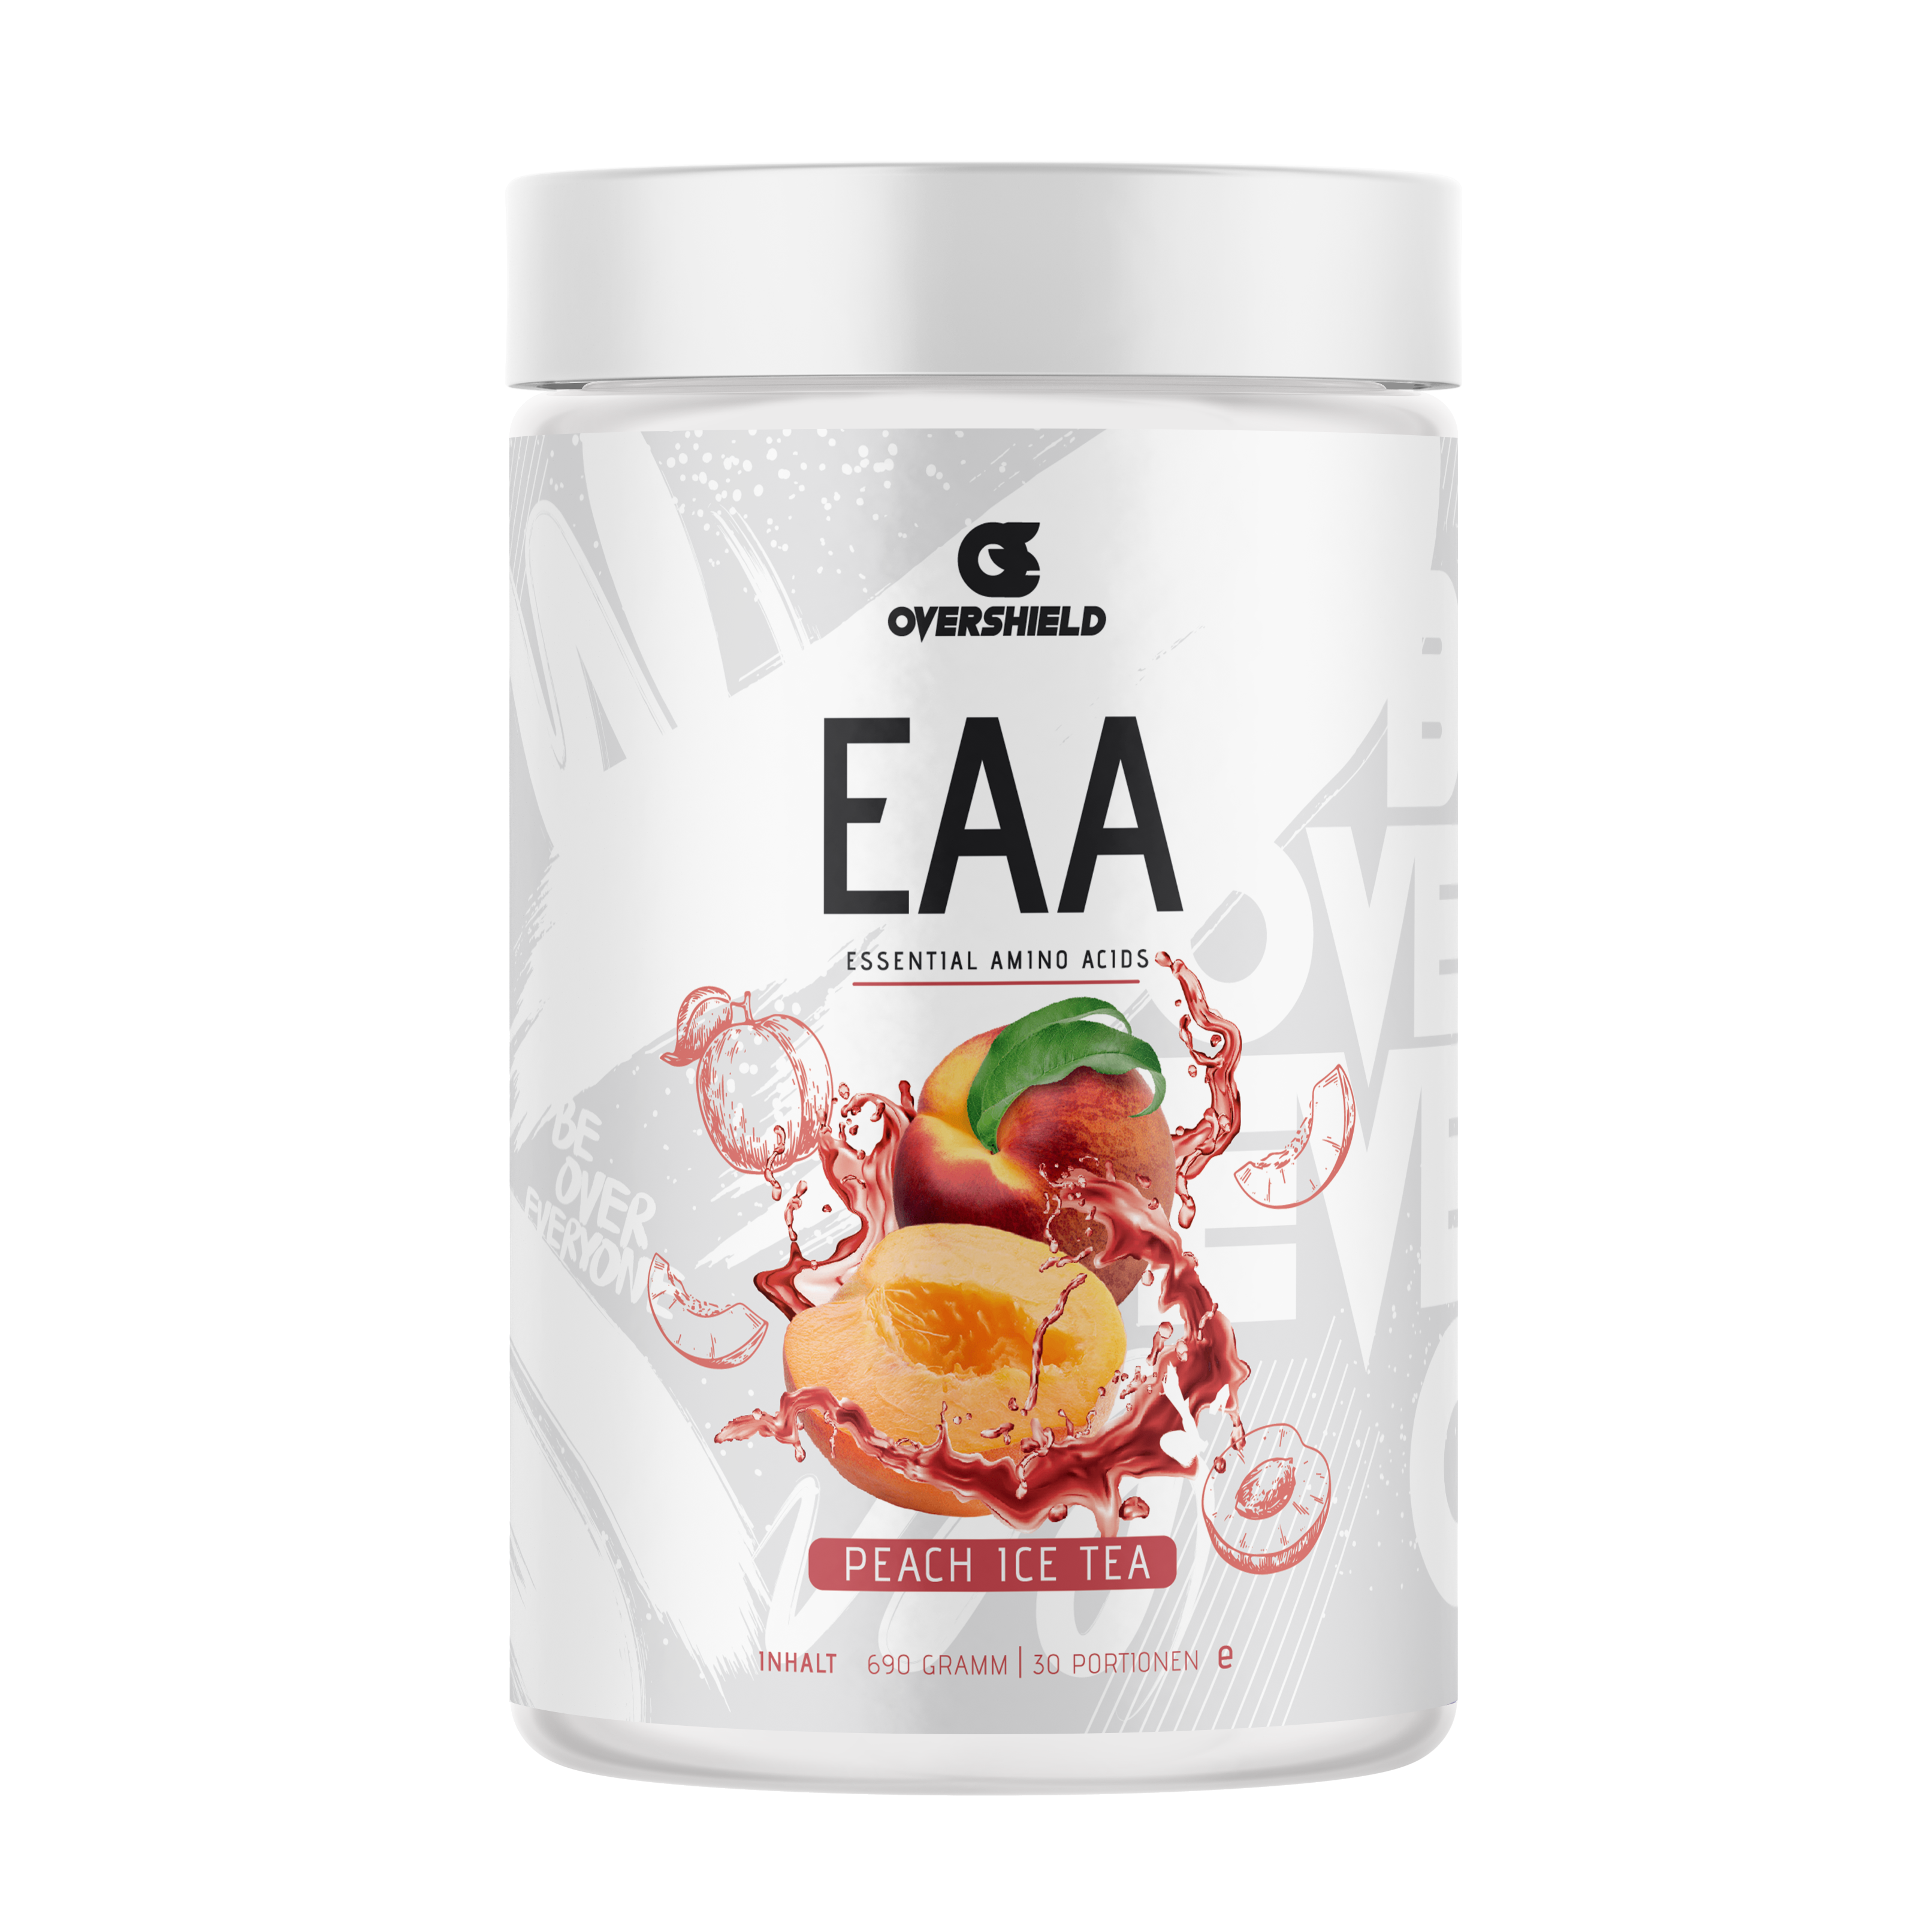 Peach Ice Tea EAA Aminosäuren in weißer Dose von Overshield. Der Inhalt entspricht 33 Portionen. Pfirsiche mit Wasser.